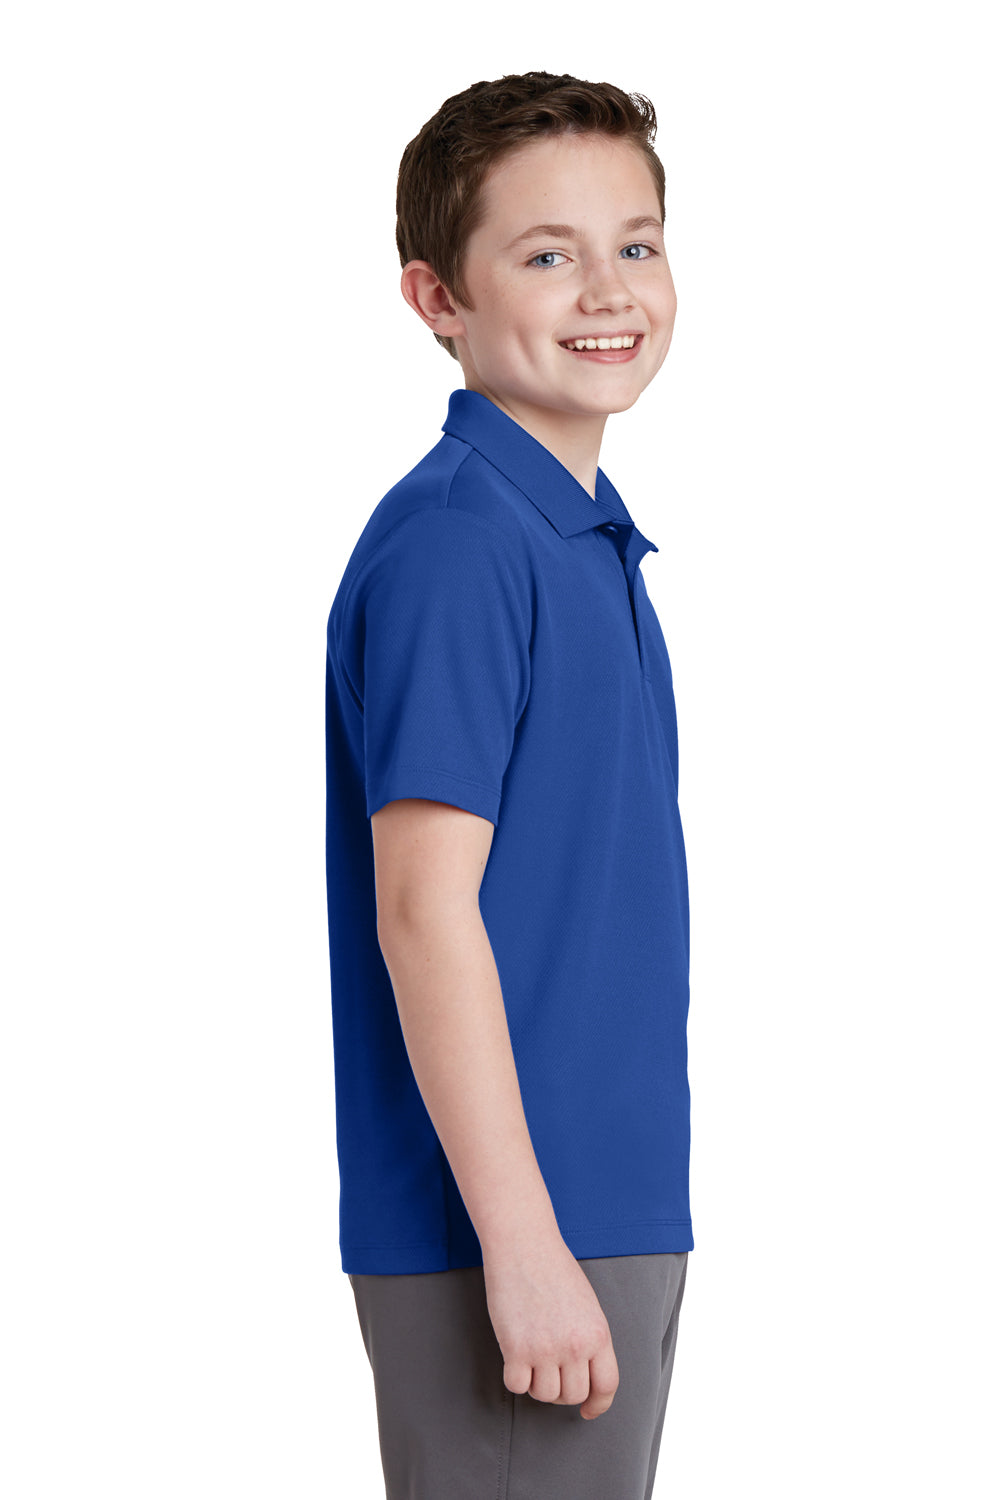 Sport-Tek YST640 Youth RacerMesh Moisture Wicking Short Sleeve Polo Shirt Royal Blue Side